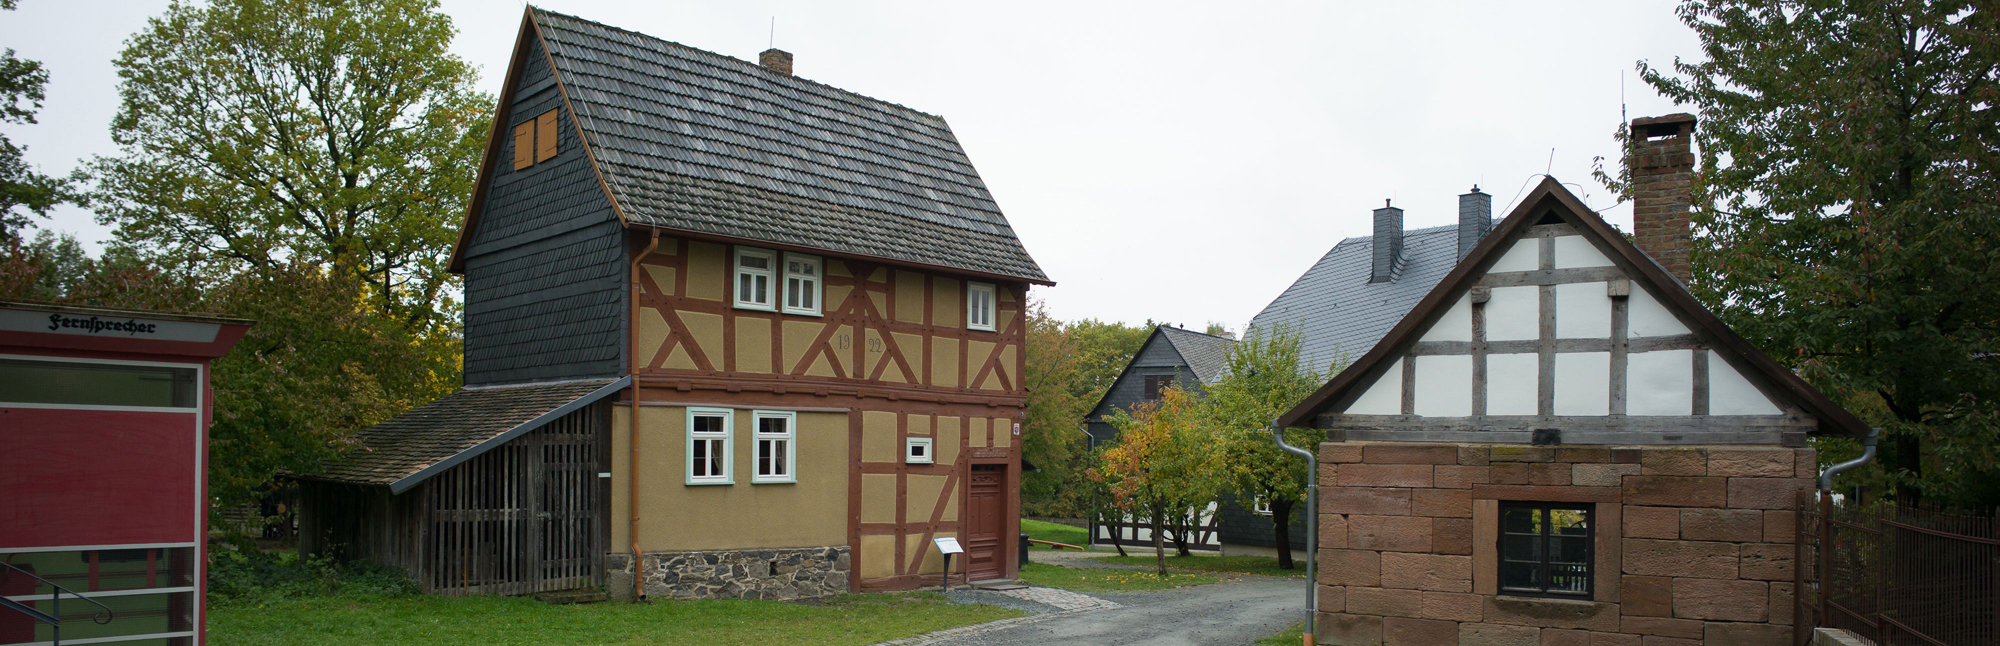 Außenansicht Haus aus Fellingshausen mit kleinem Schuppen